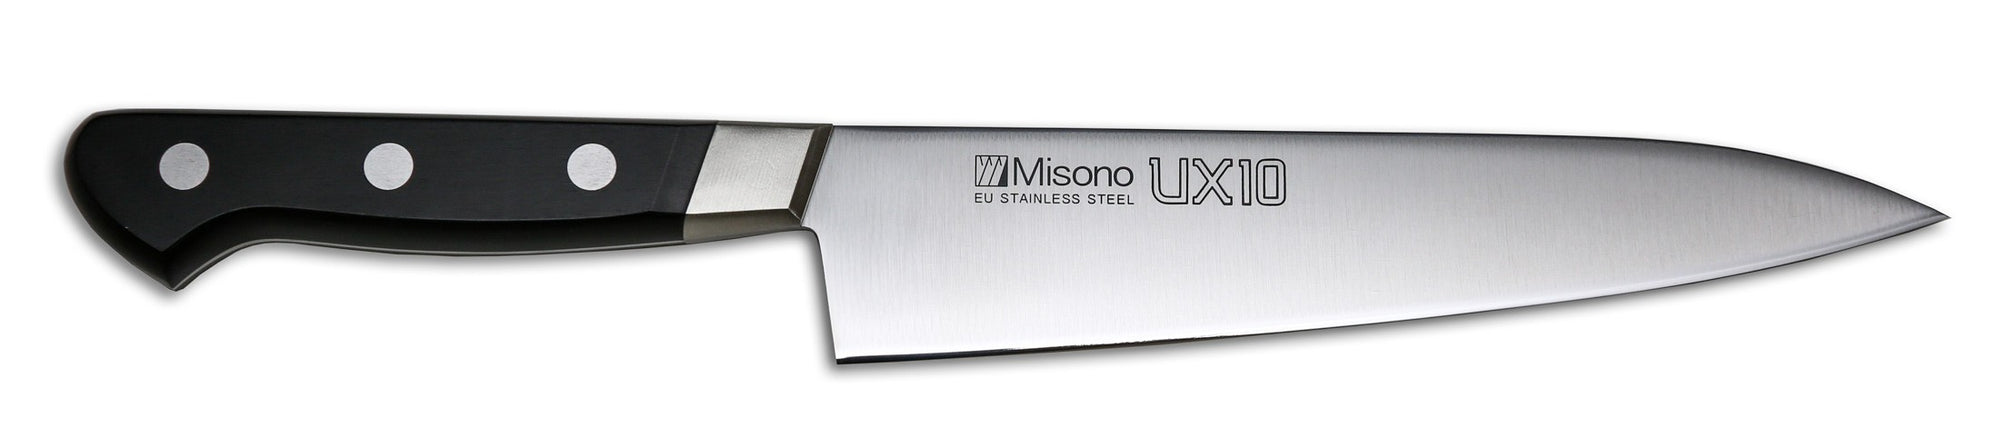 Couteau de chef Misono UX10 (Gyutou), 7,1 pouces (180 mm) - # 711